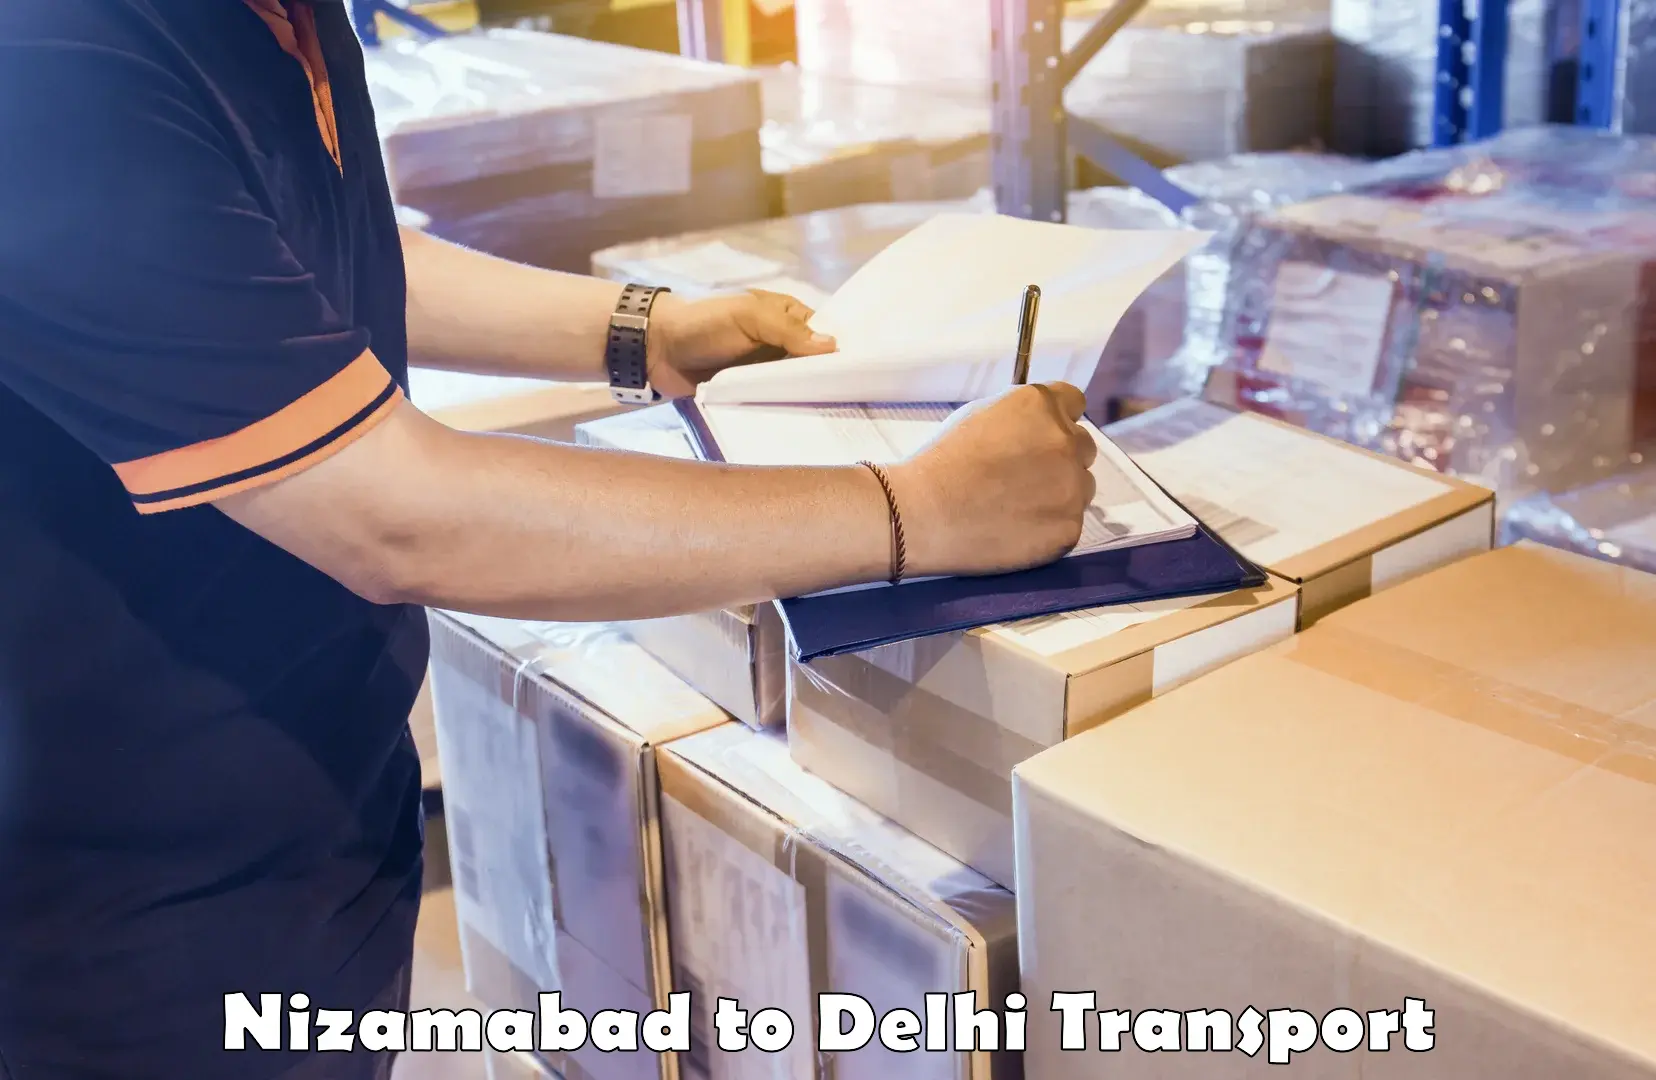 Parcel transport services Nizamabad to East Delhi